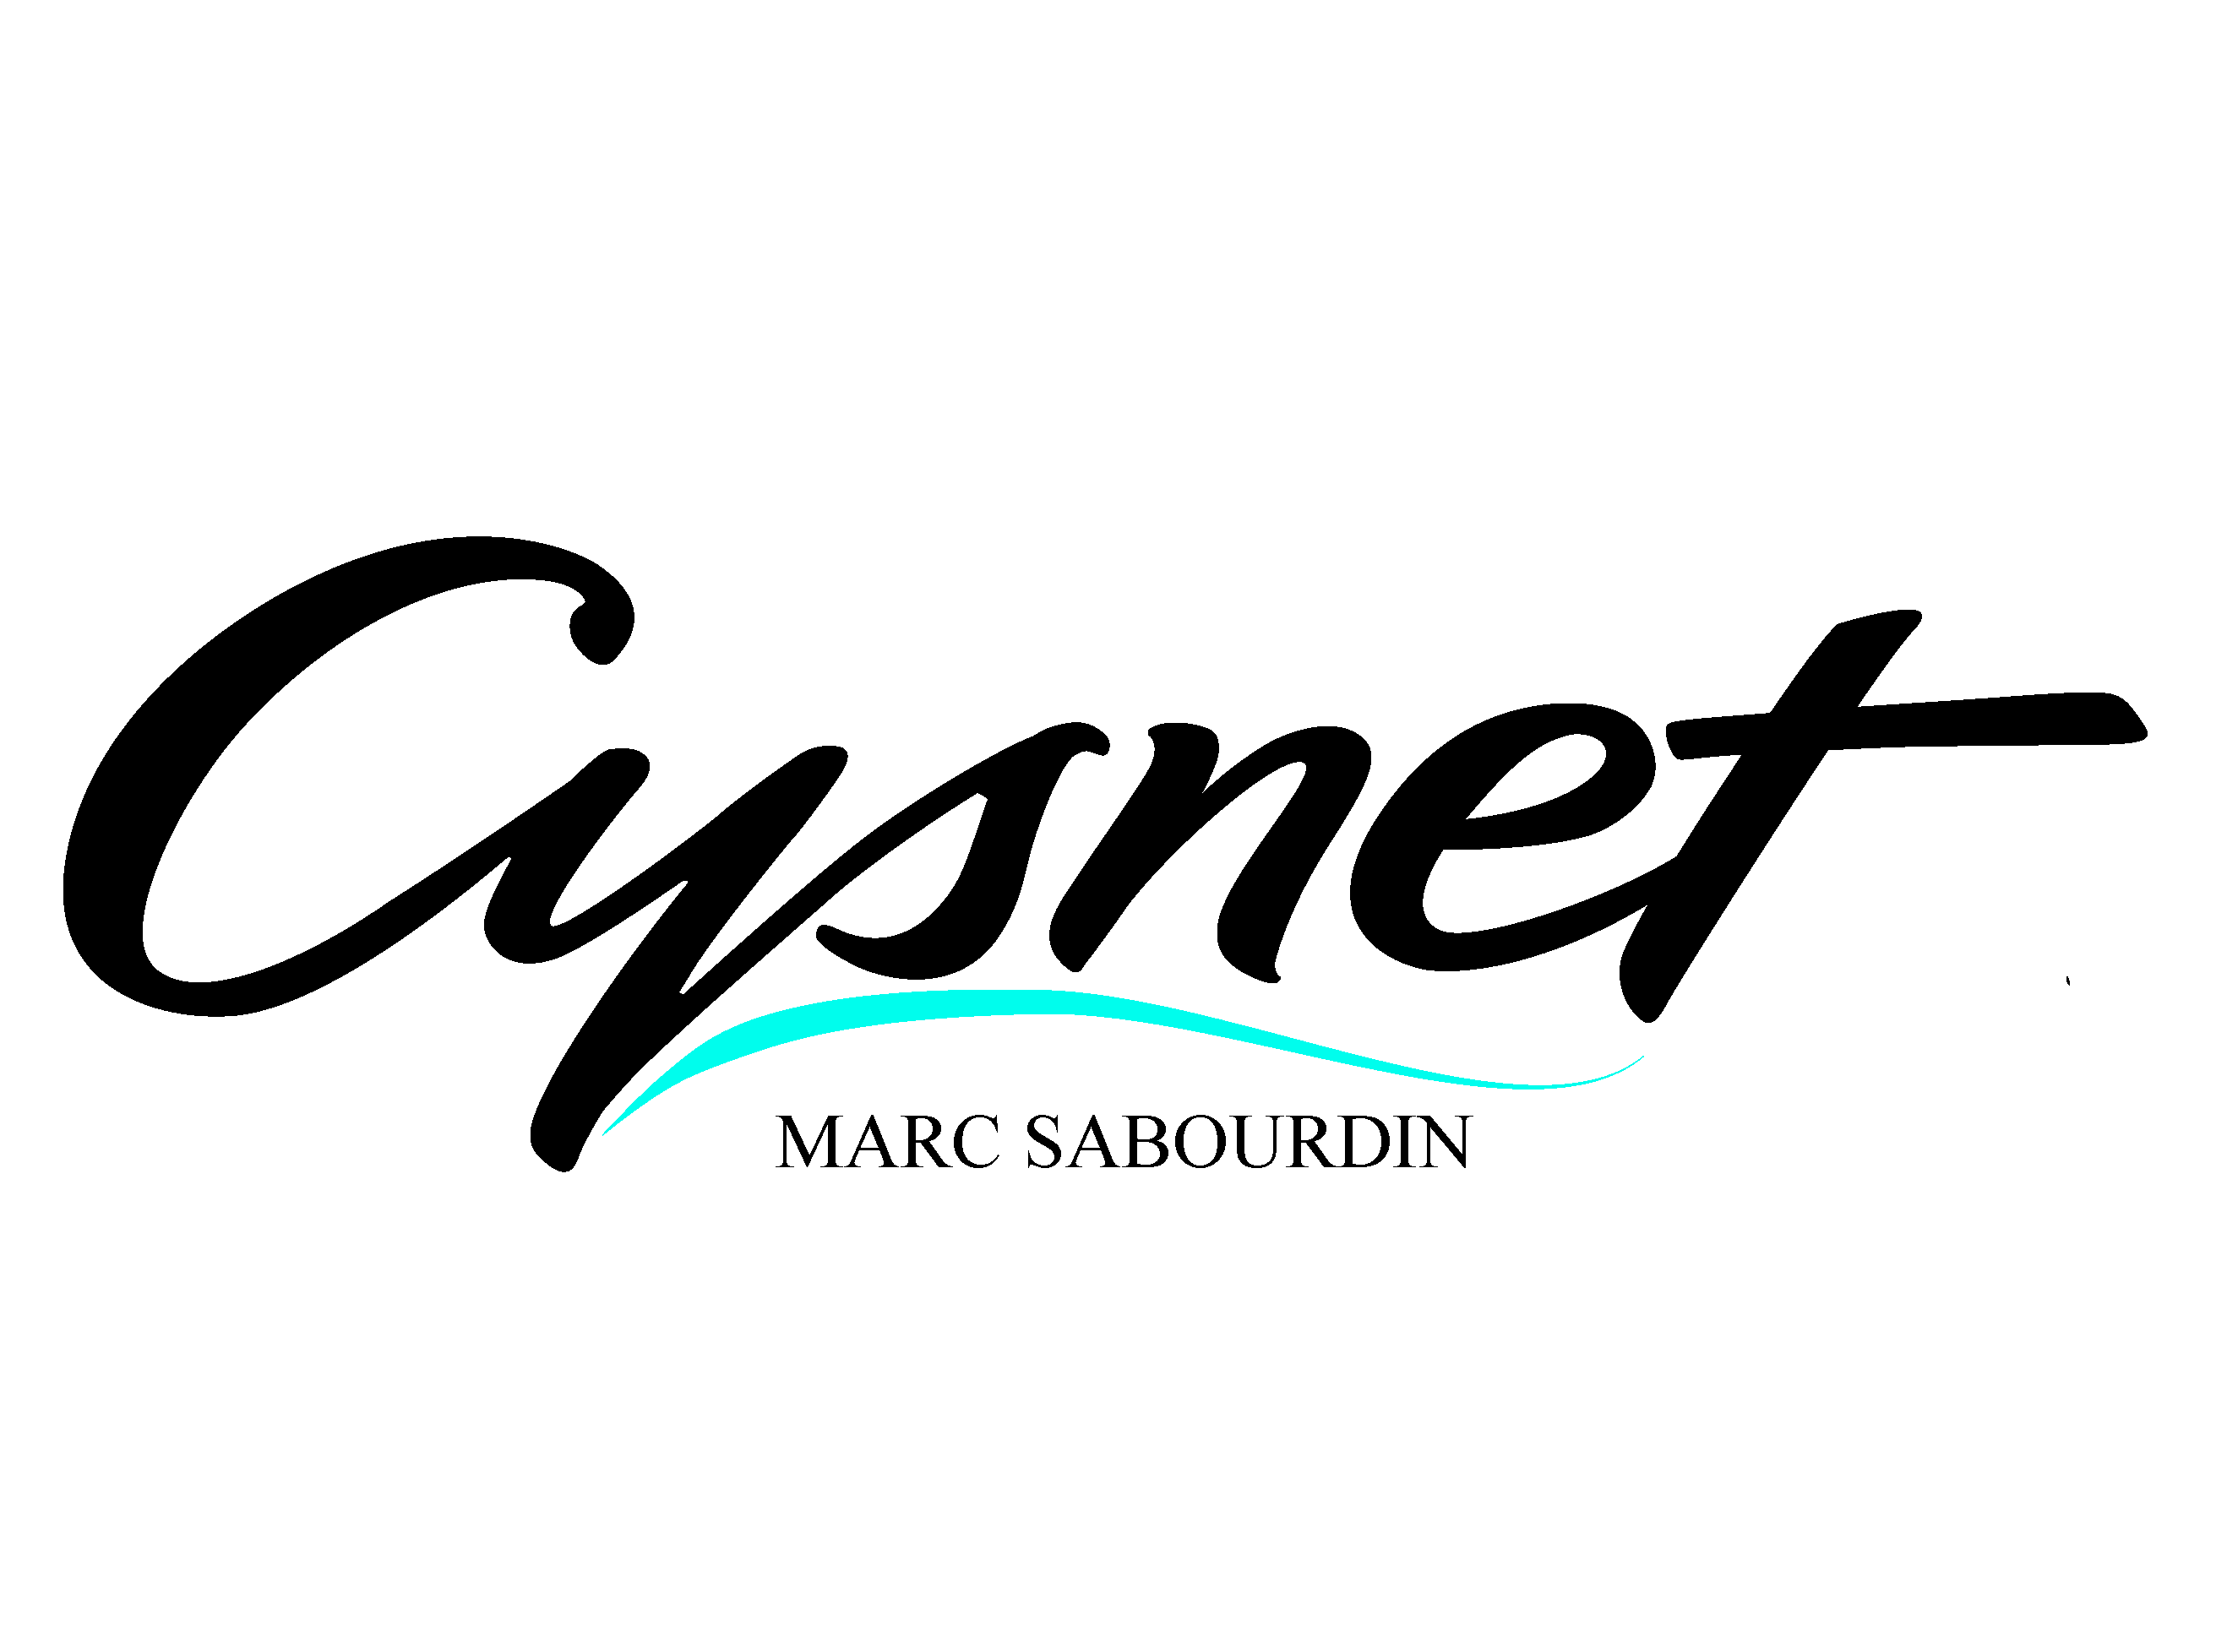 Cysnet